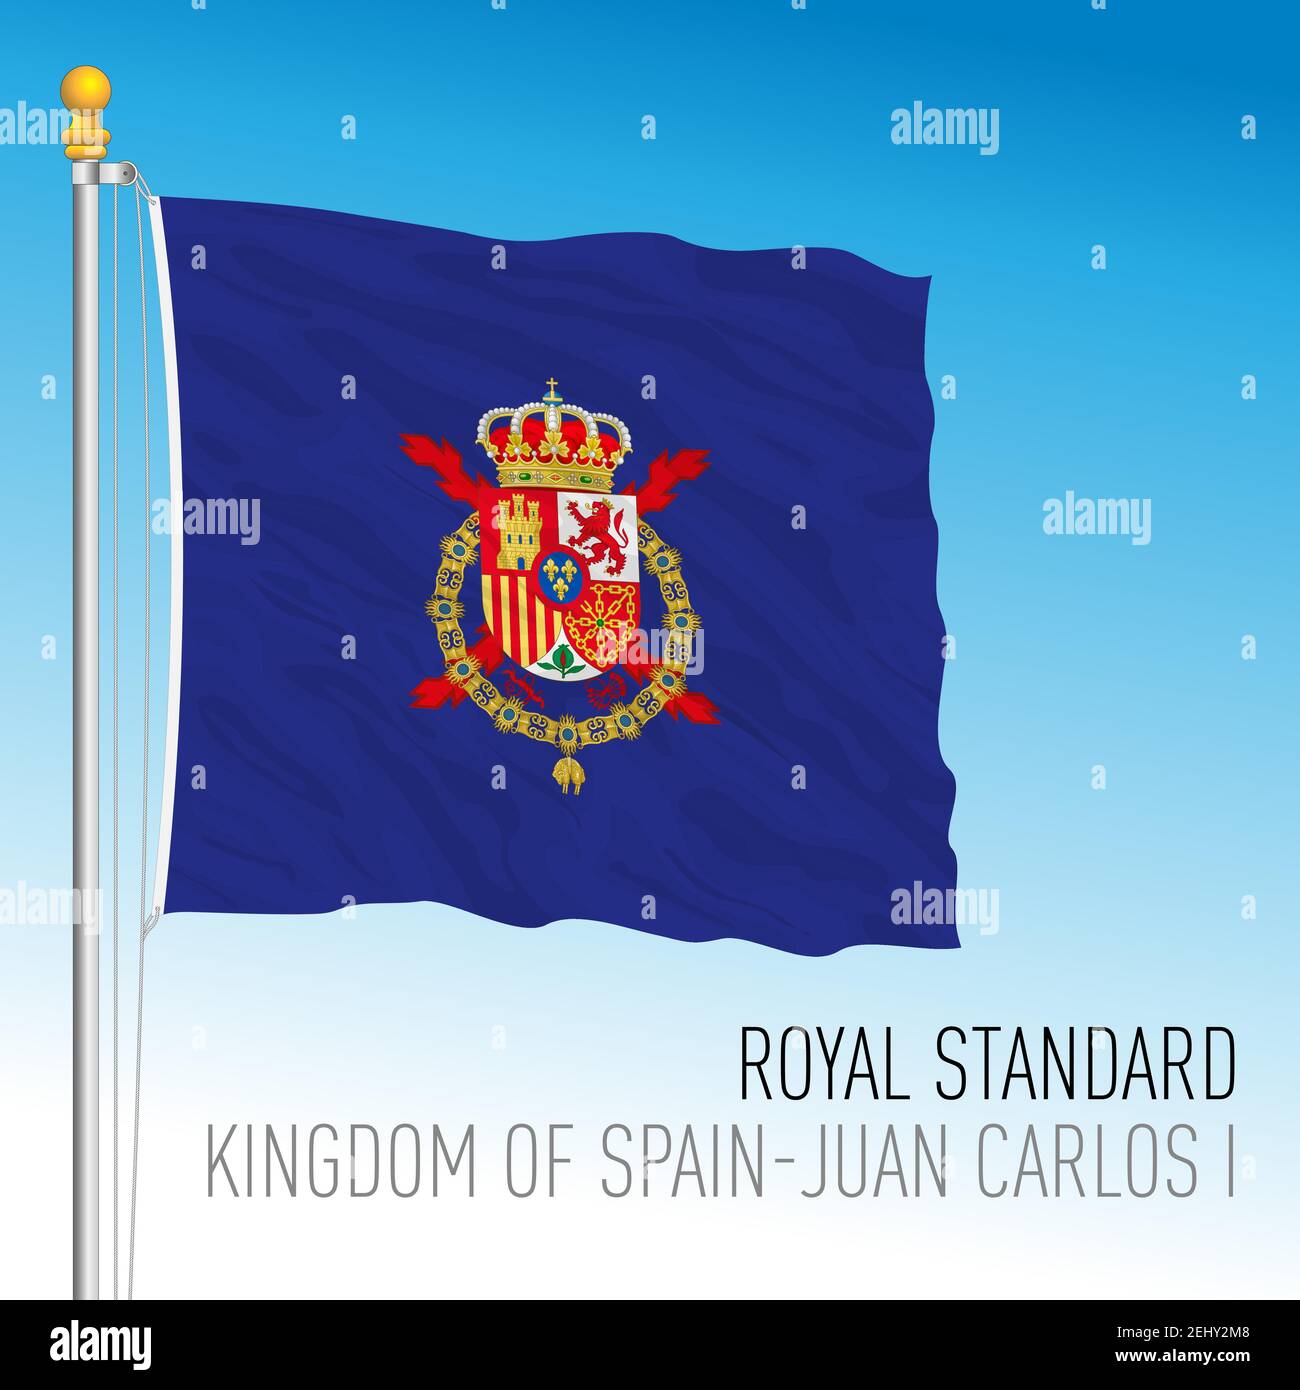 Royal Standard Bandera Juan Carlos I, Reino de España, ilustración vectorial Ilustración del Vector